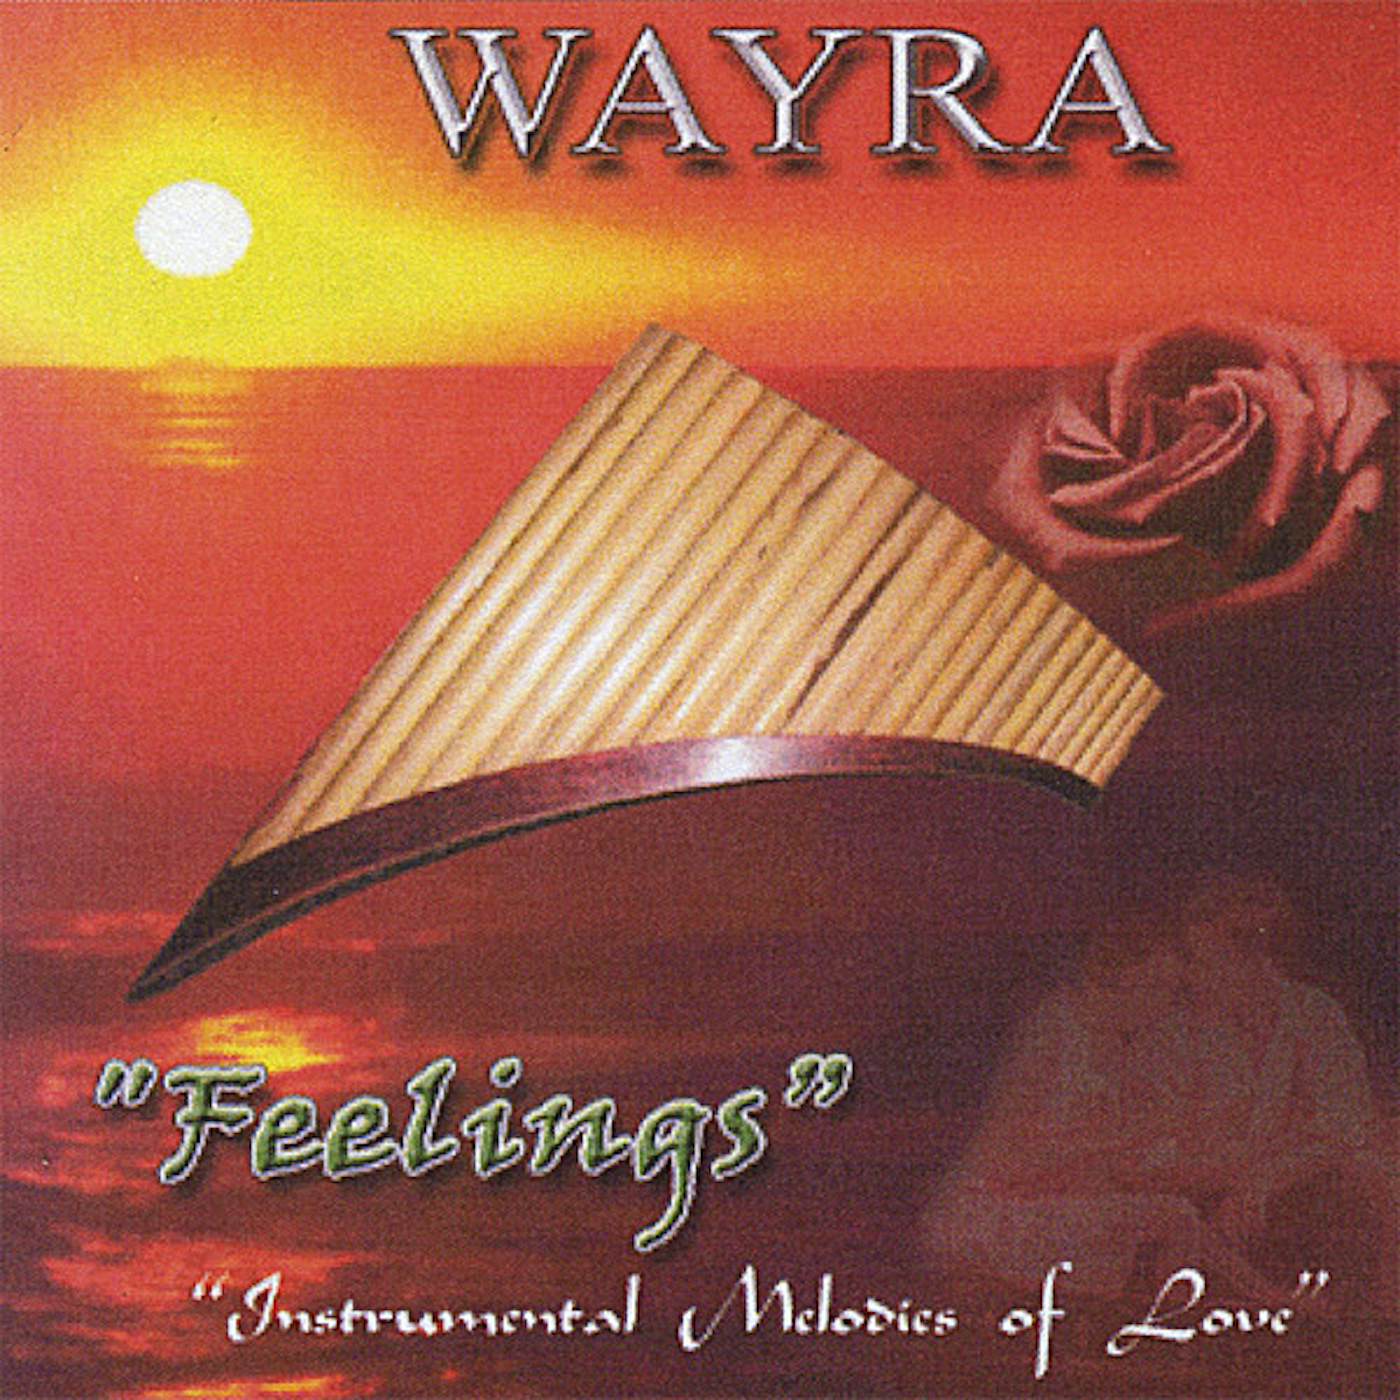 Wayra FEELINGS CD